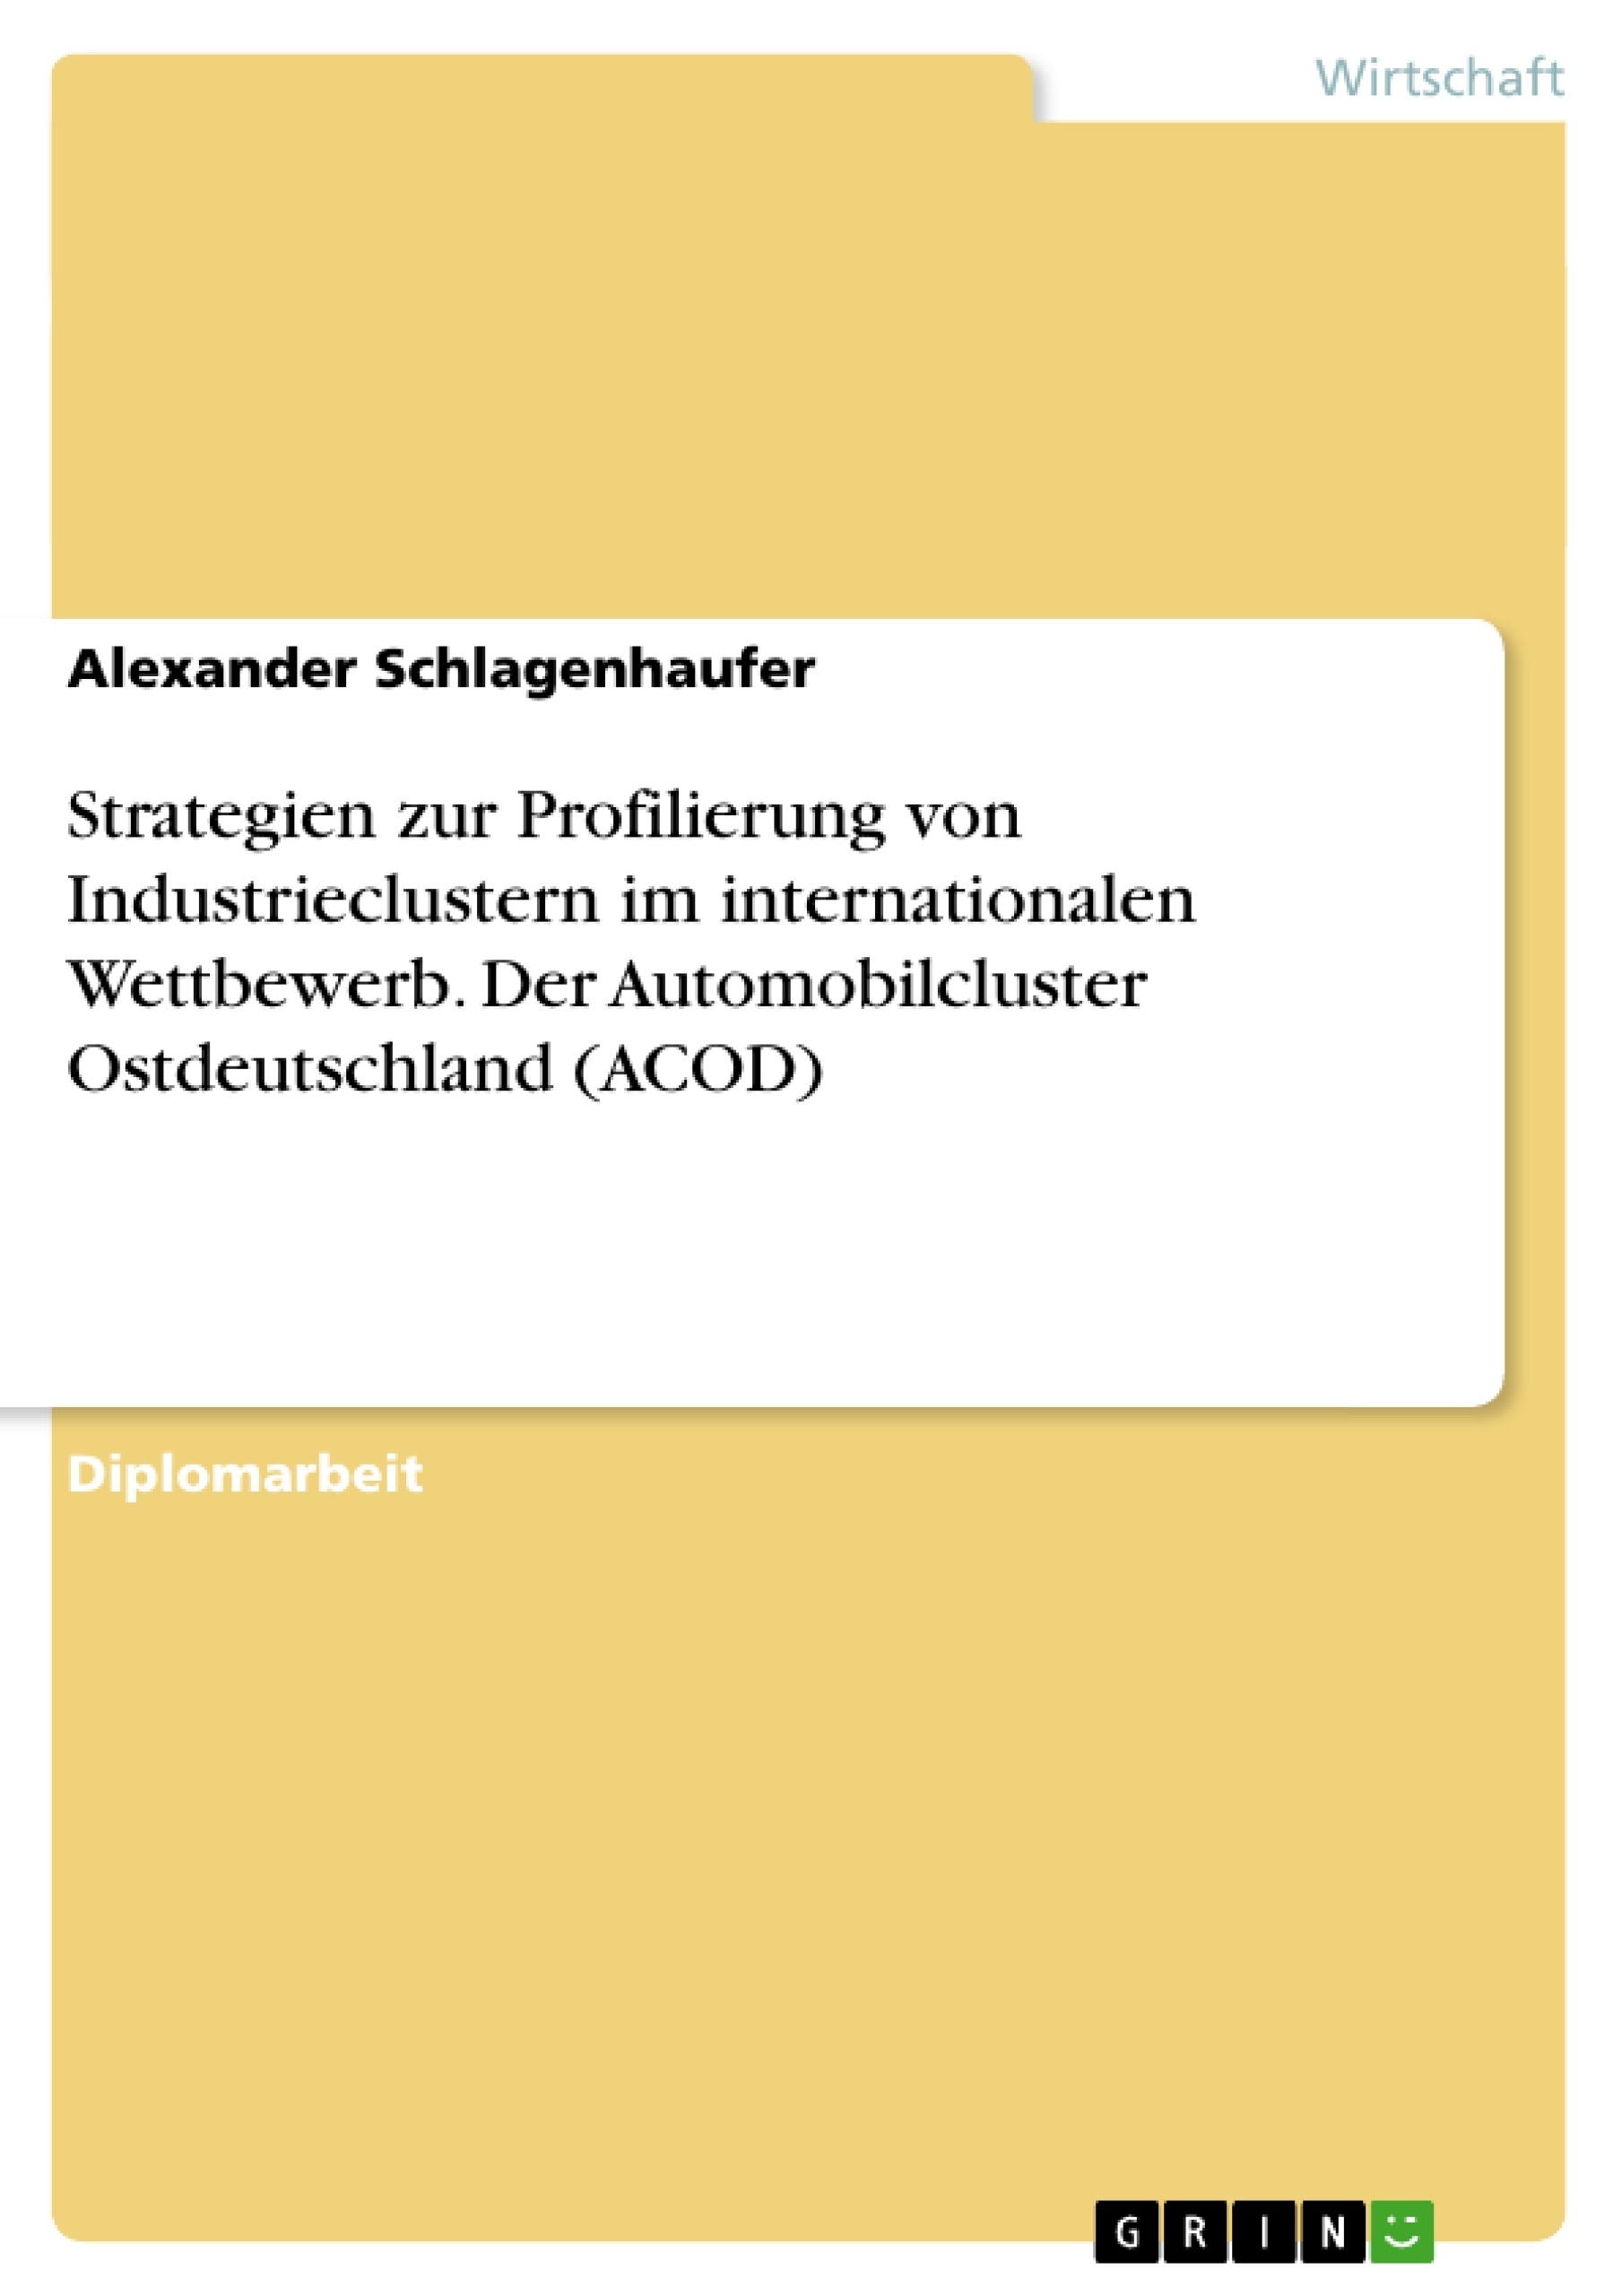 Title: Strategien zur Profilierung von Industrieclustern im internationalen Wettbewerb. Der Automobilcluster Ostdeutschland (ACOD)